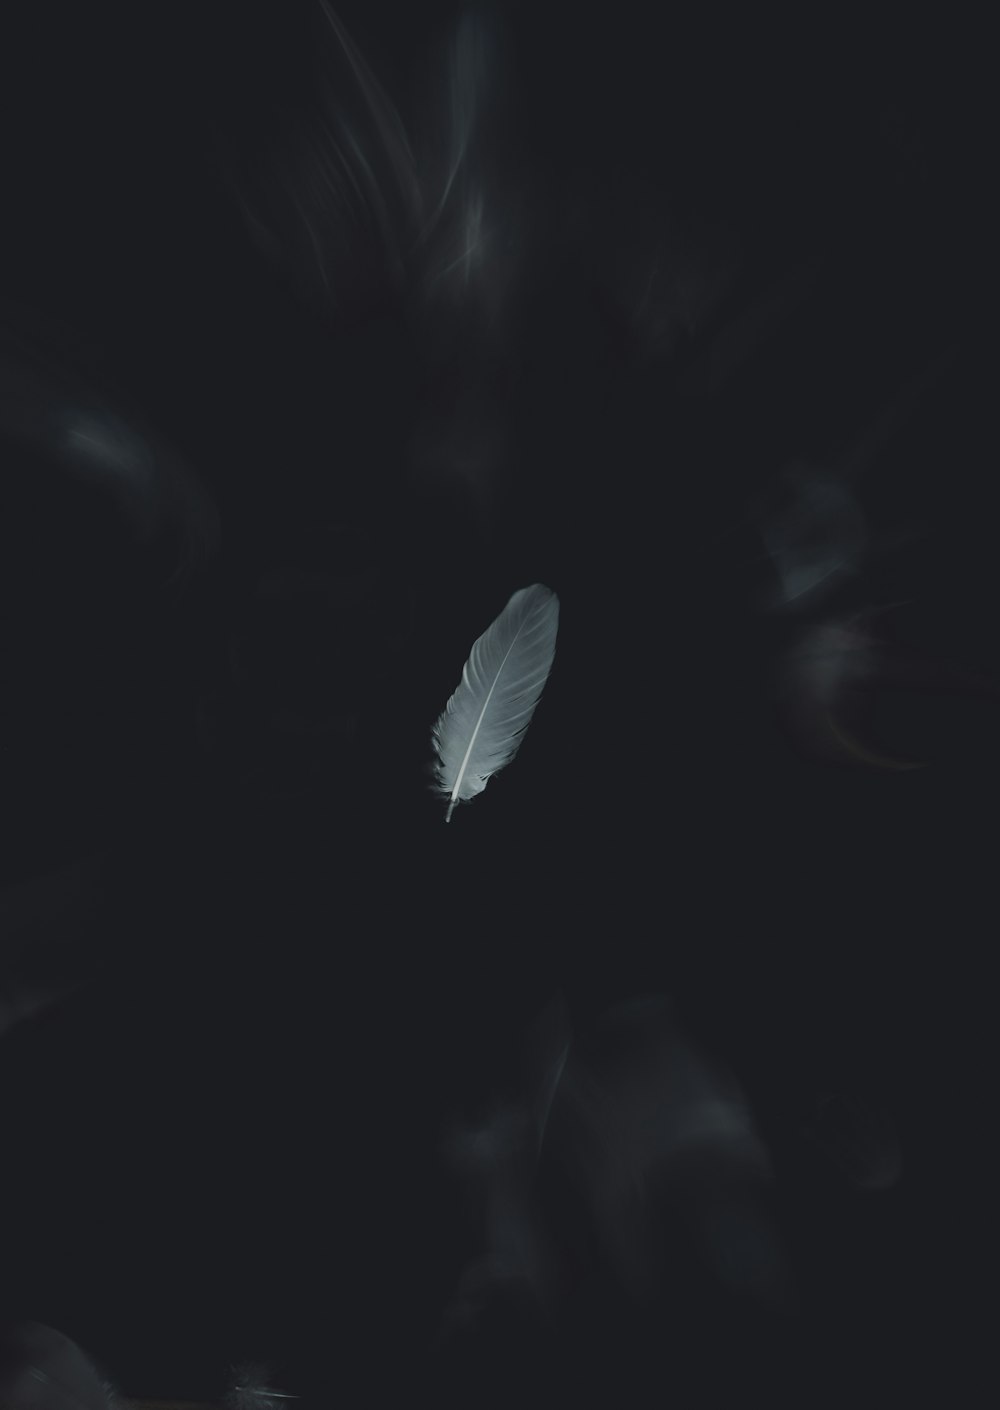 Una pluma blanca flotando en la oscuridad